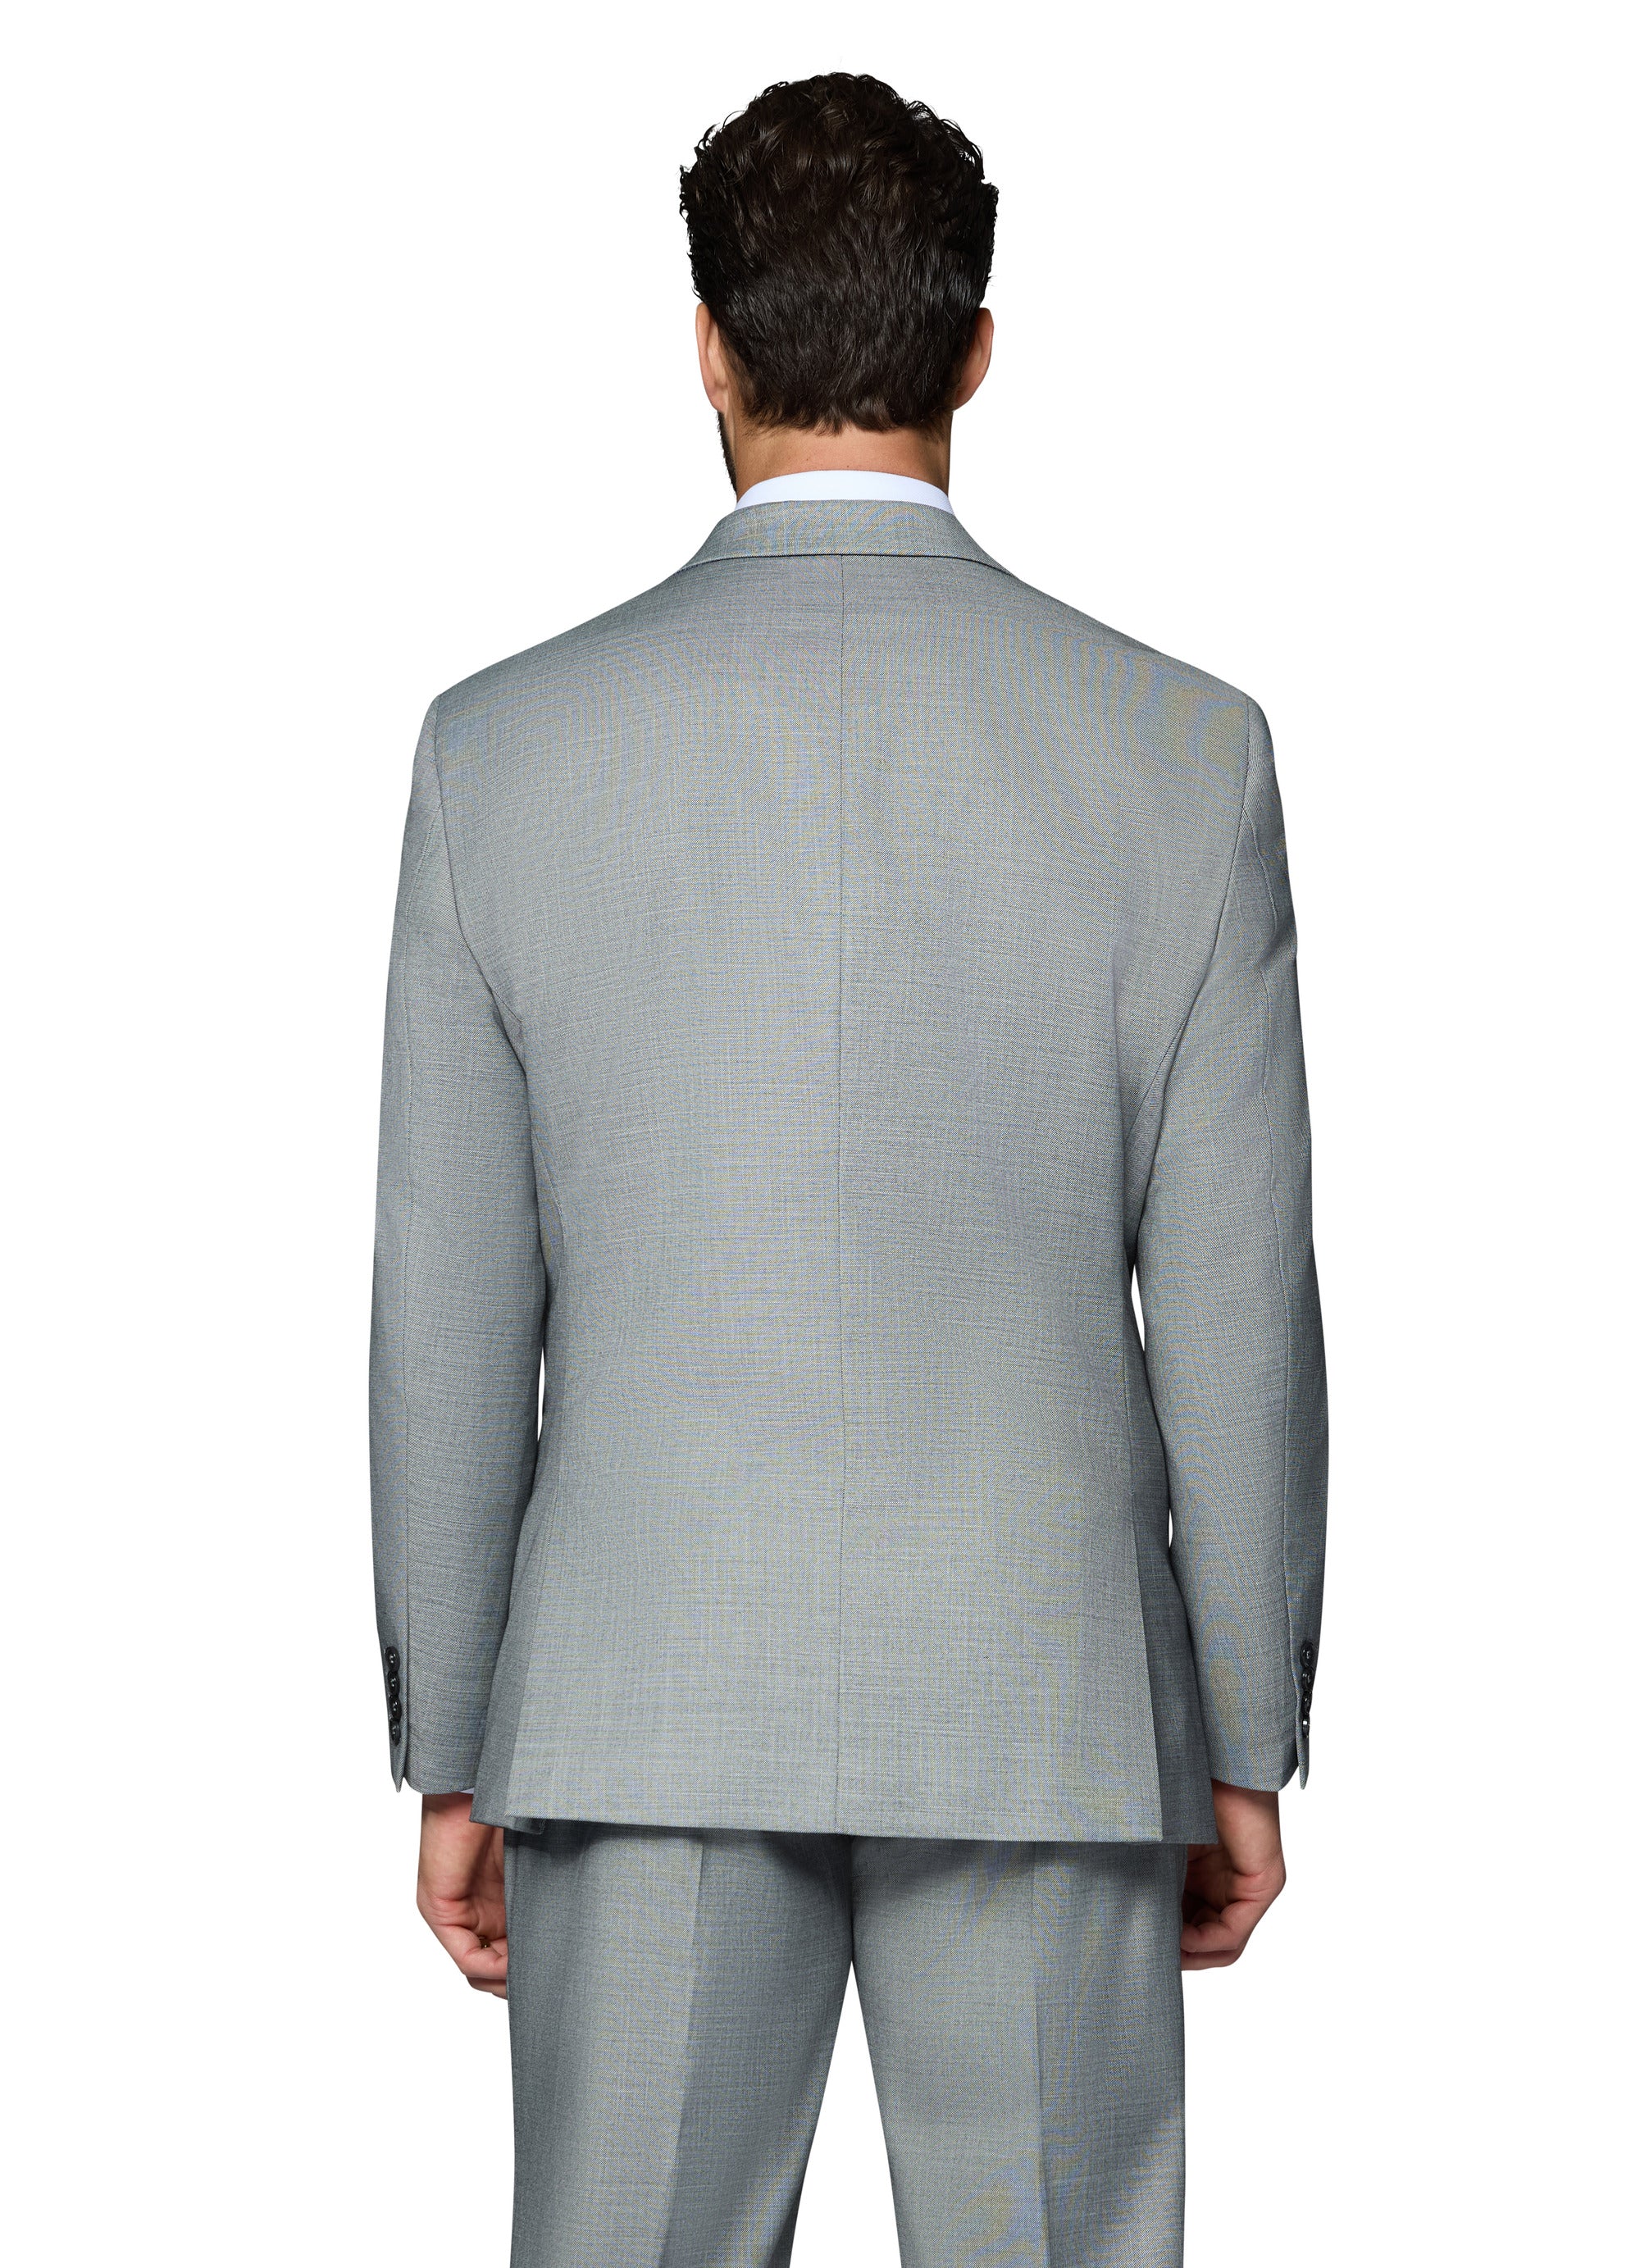 Berragamo Sharkskin Vested Slim Fit Grey Suit